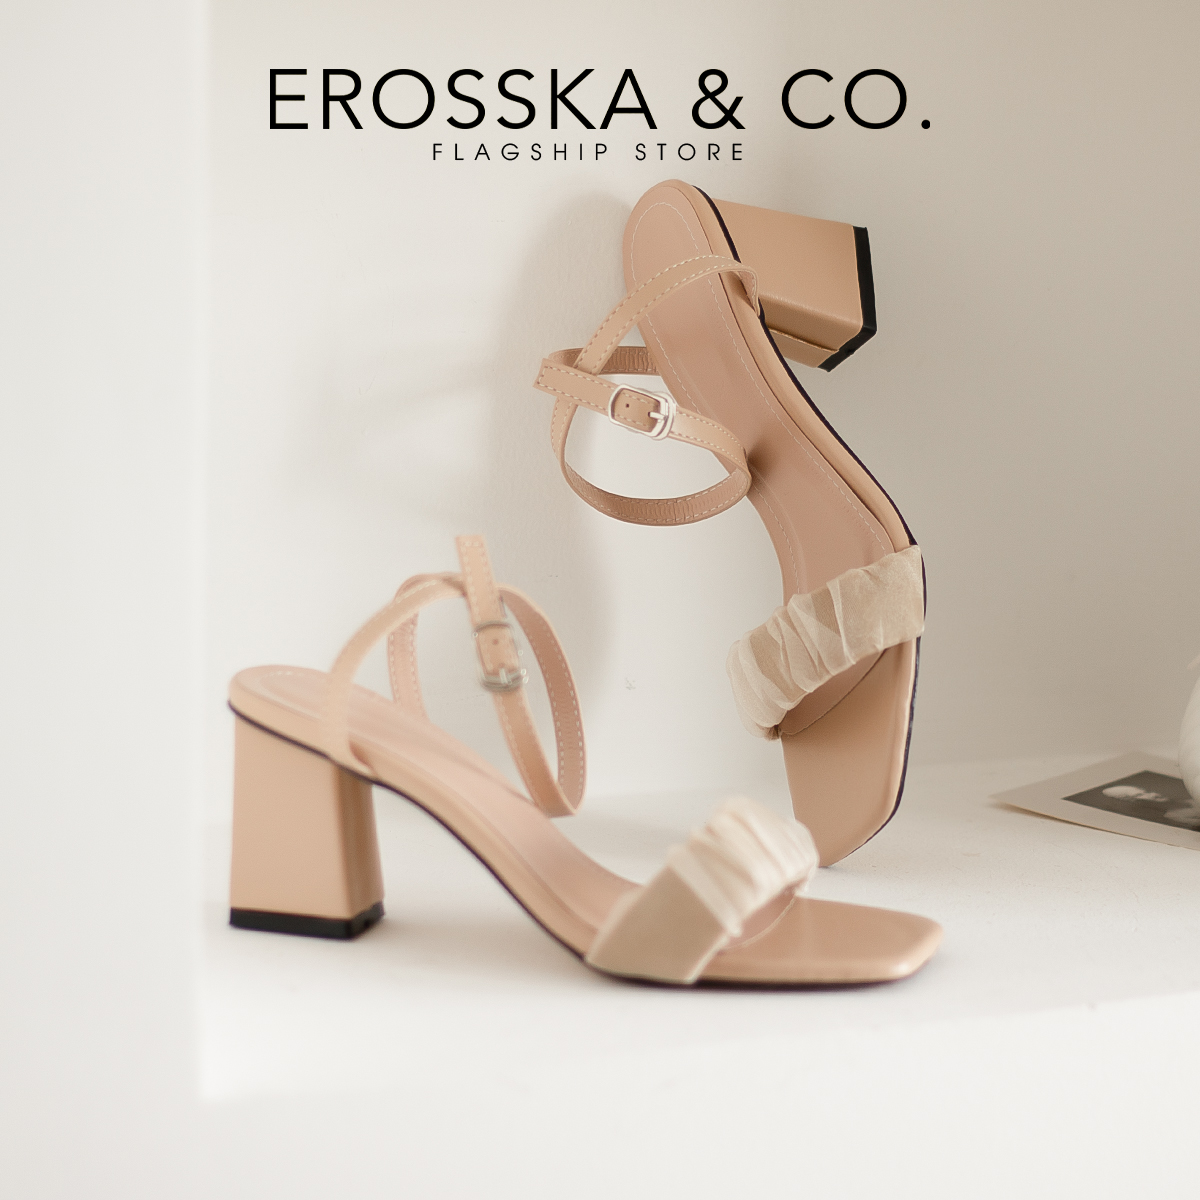 Erosska - Giày sandal cao gót nữ quai nhún phối dây quai mảnh cao 7cm màu đen - EB050